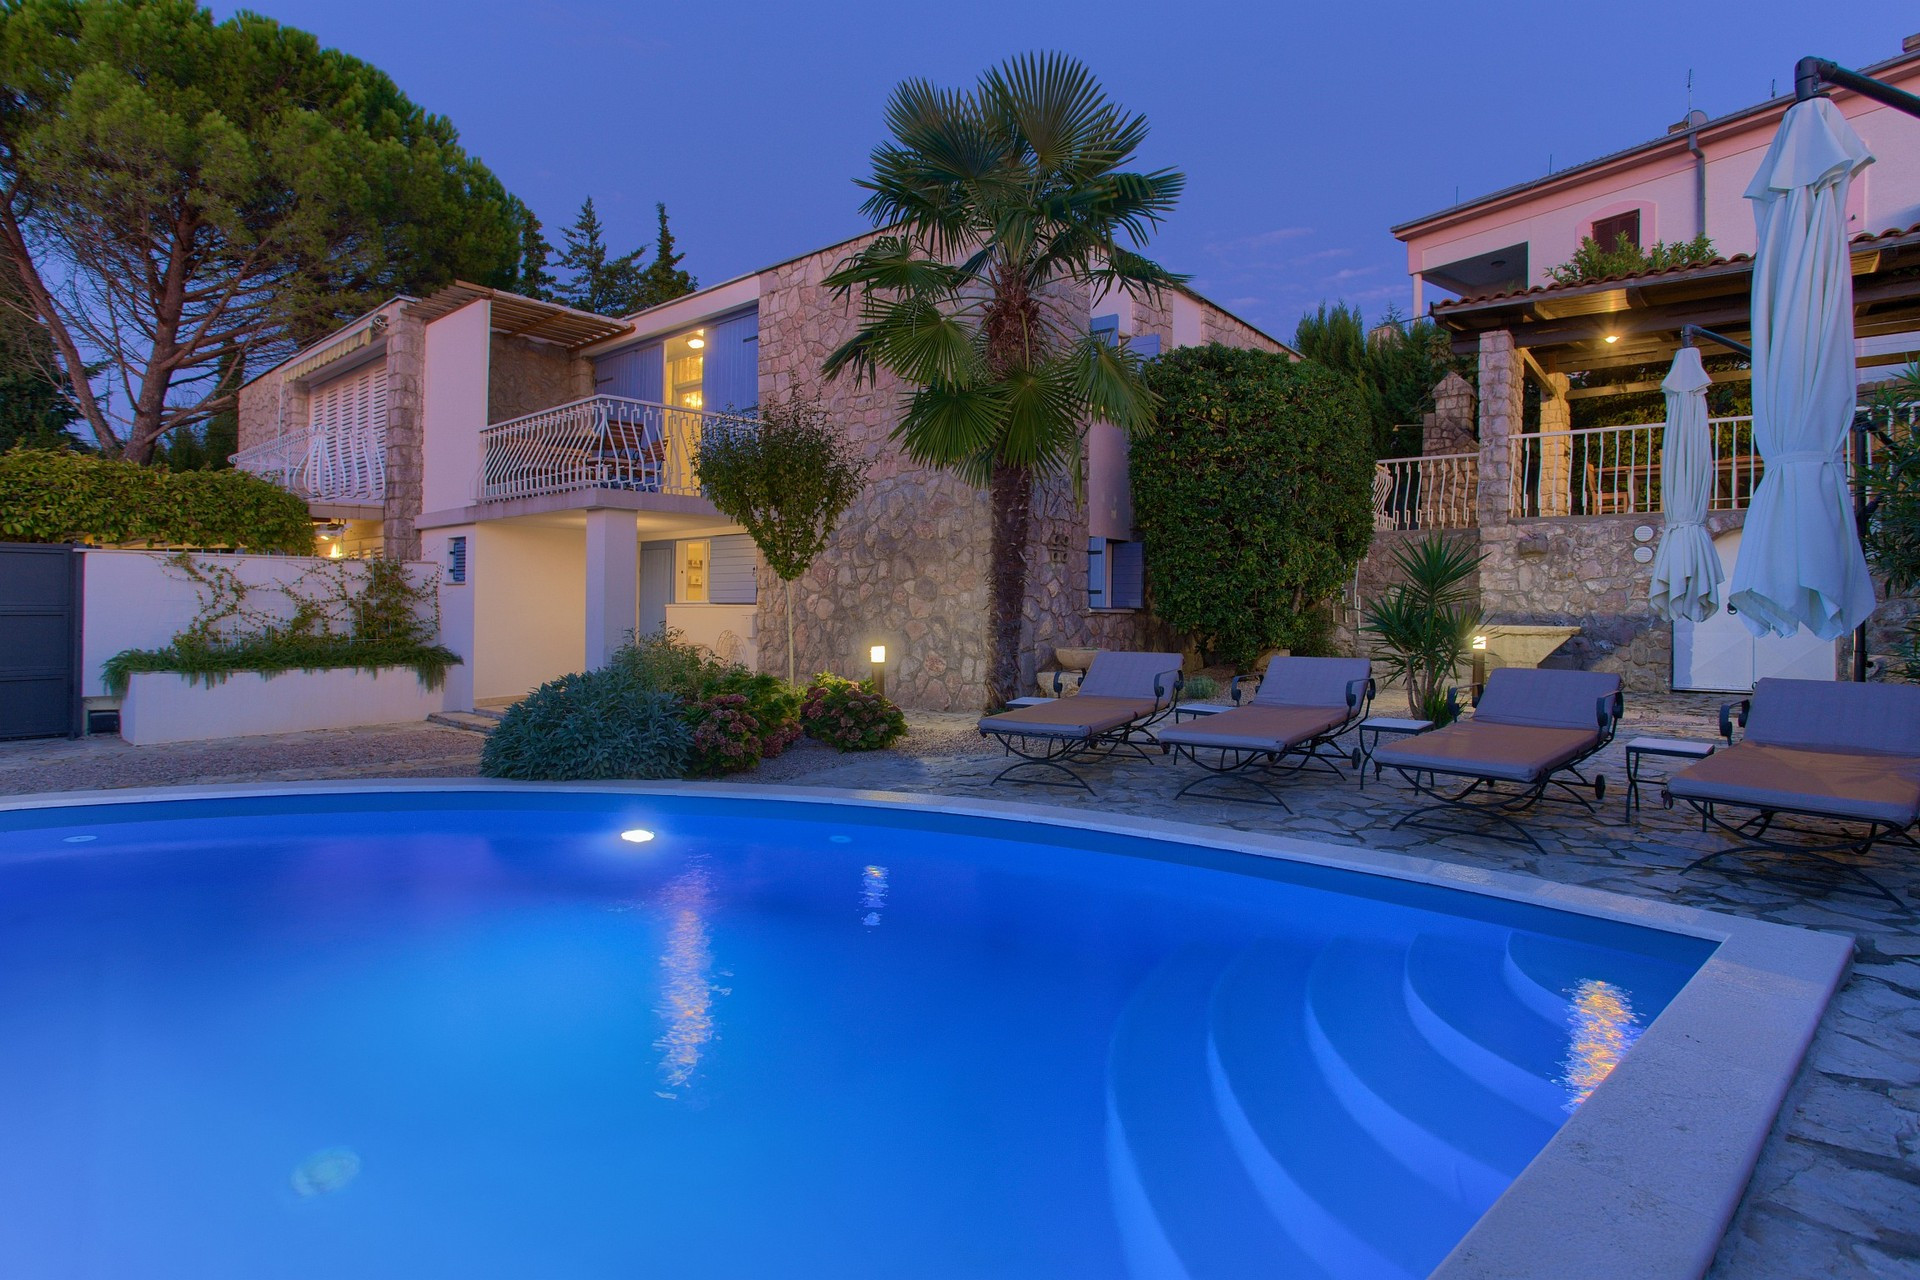 Villa Blue Dondola nalazi se u Malinskoj na otoku Krku.